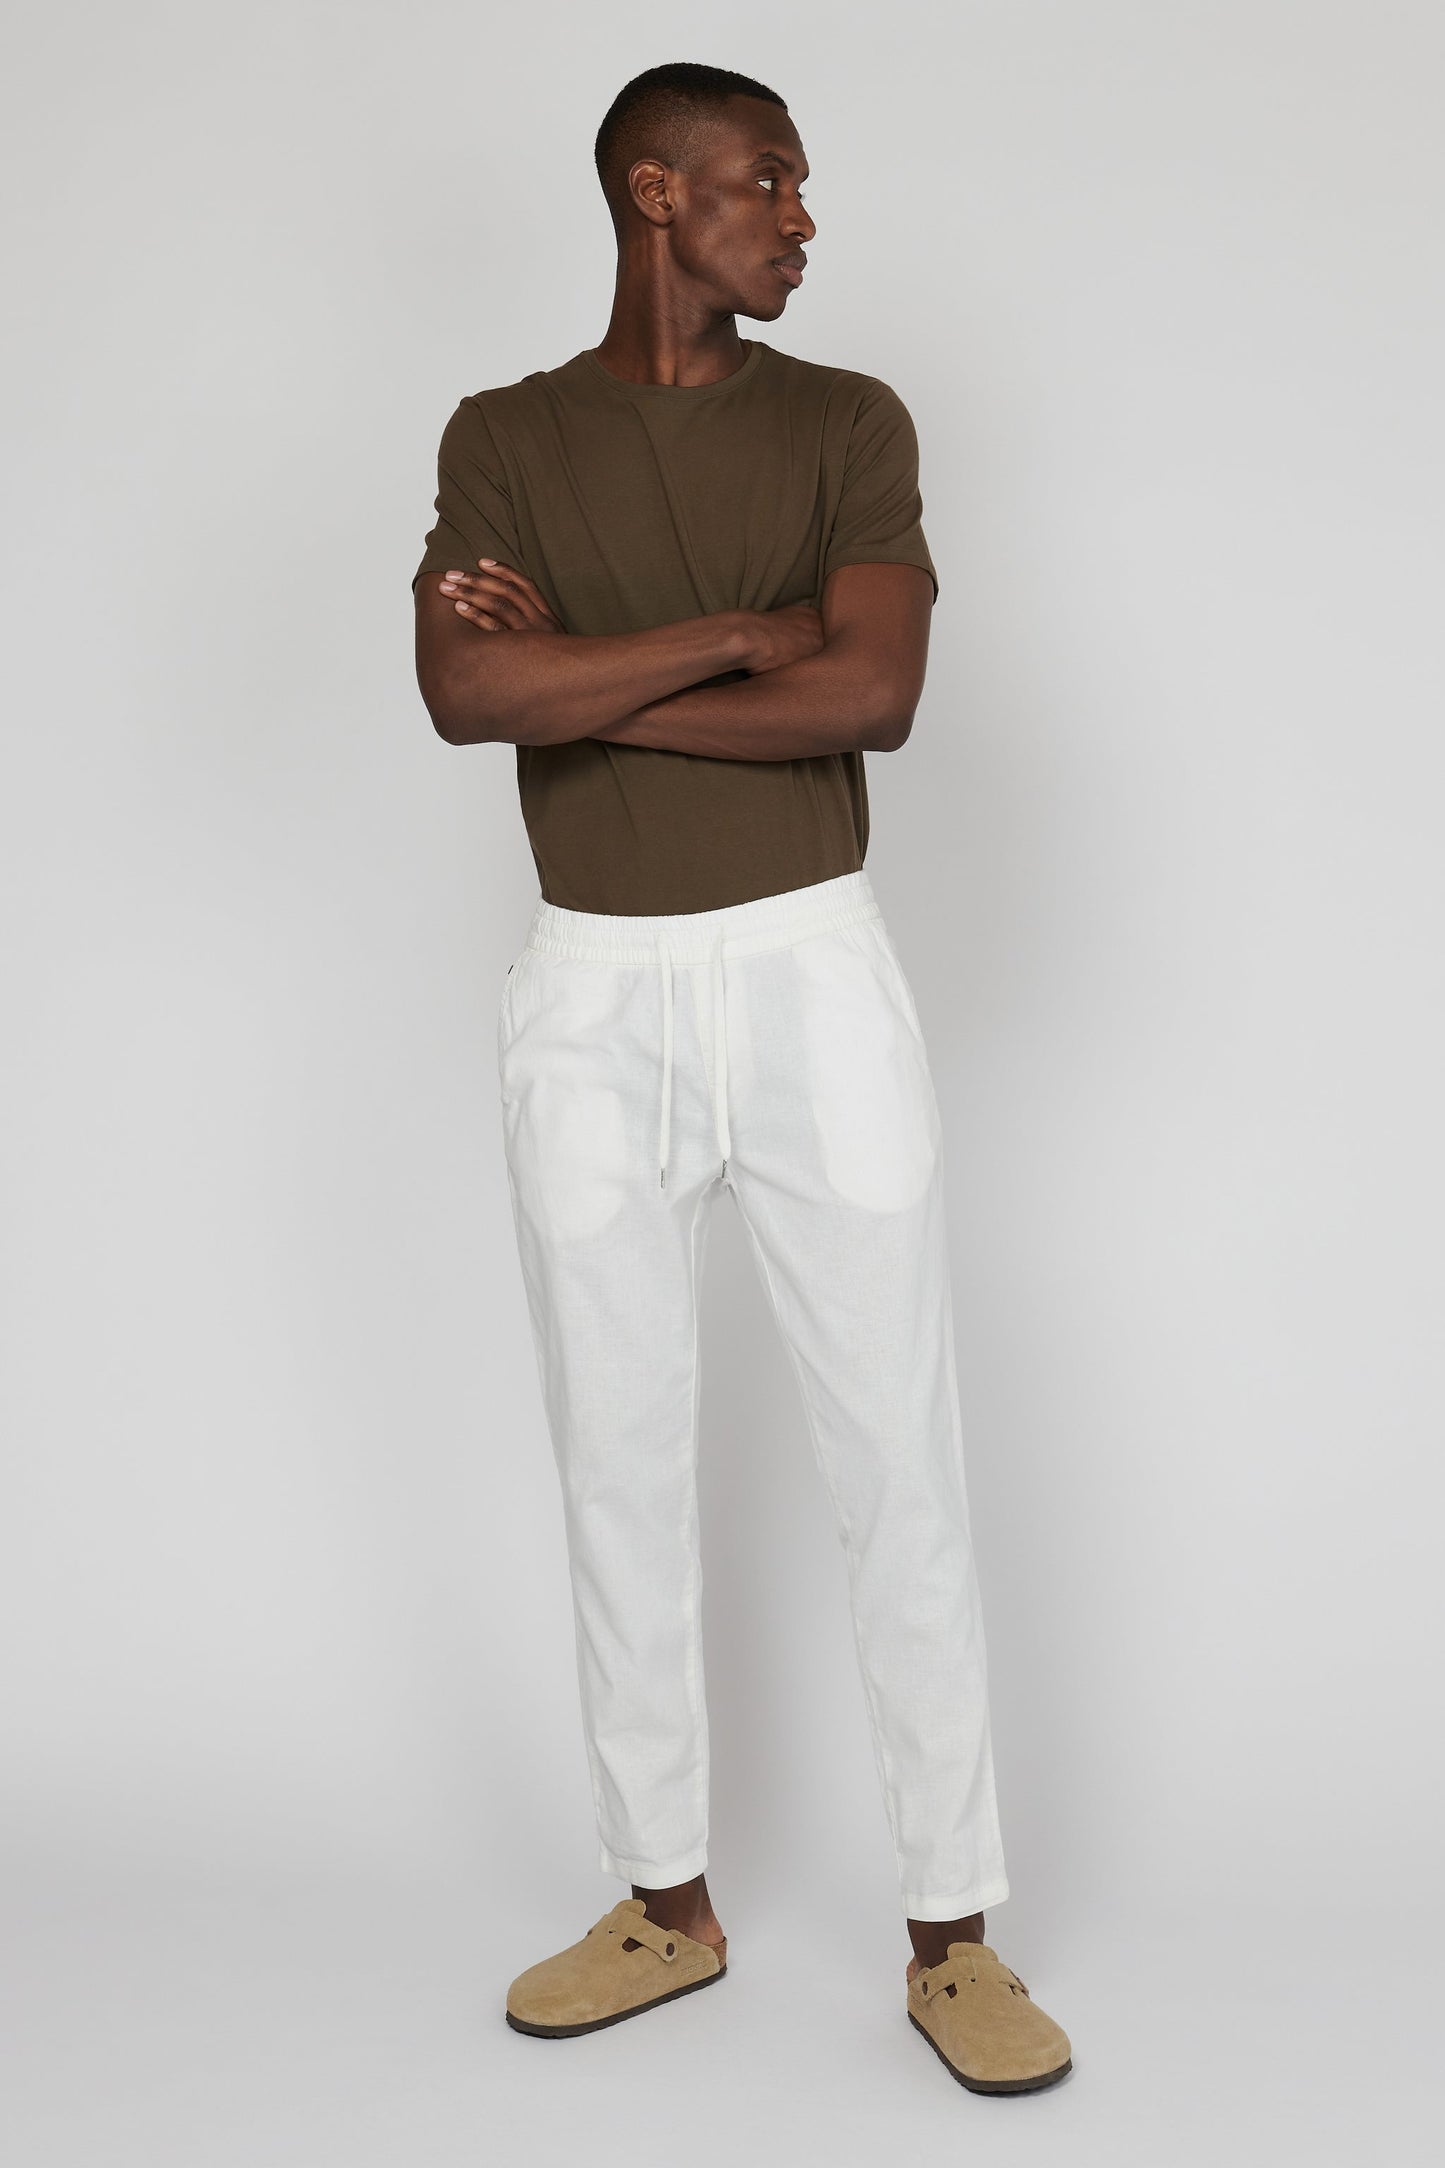 Pantalon Matinique de couleur Blanc